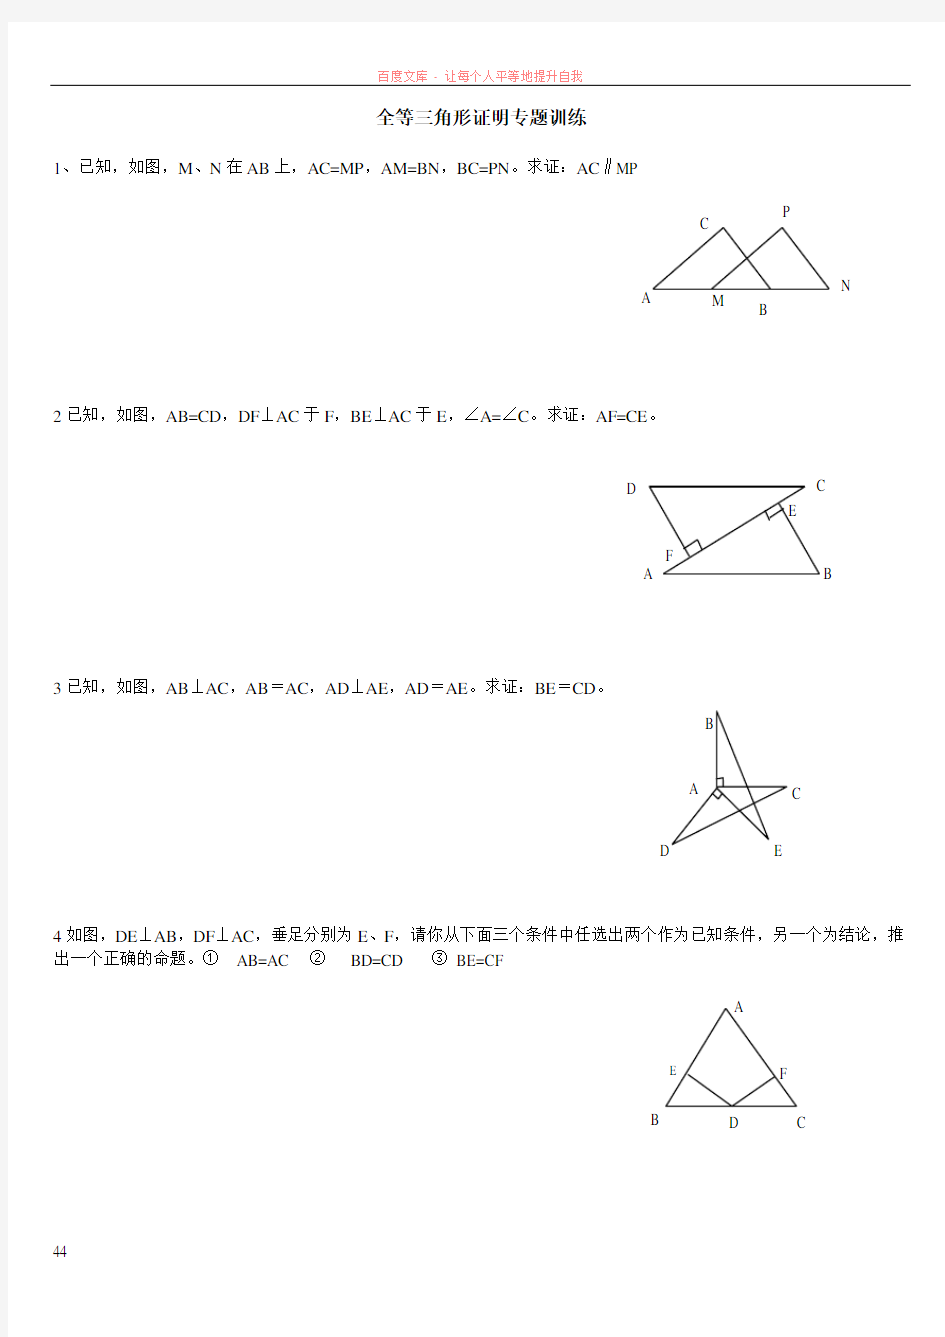 全等三角形证明基础题型